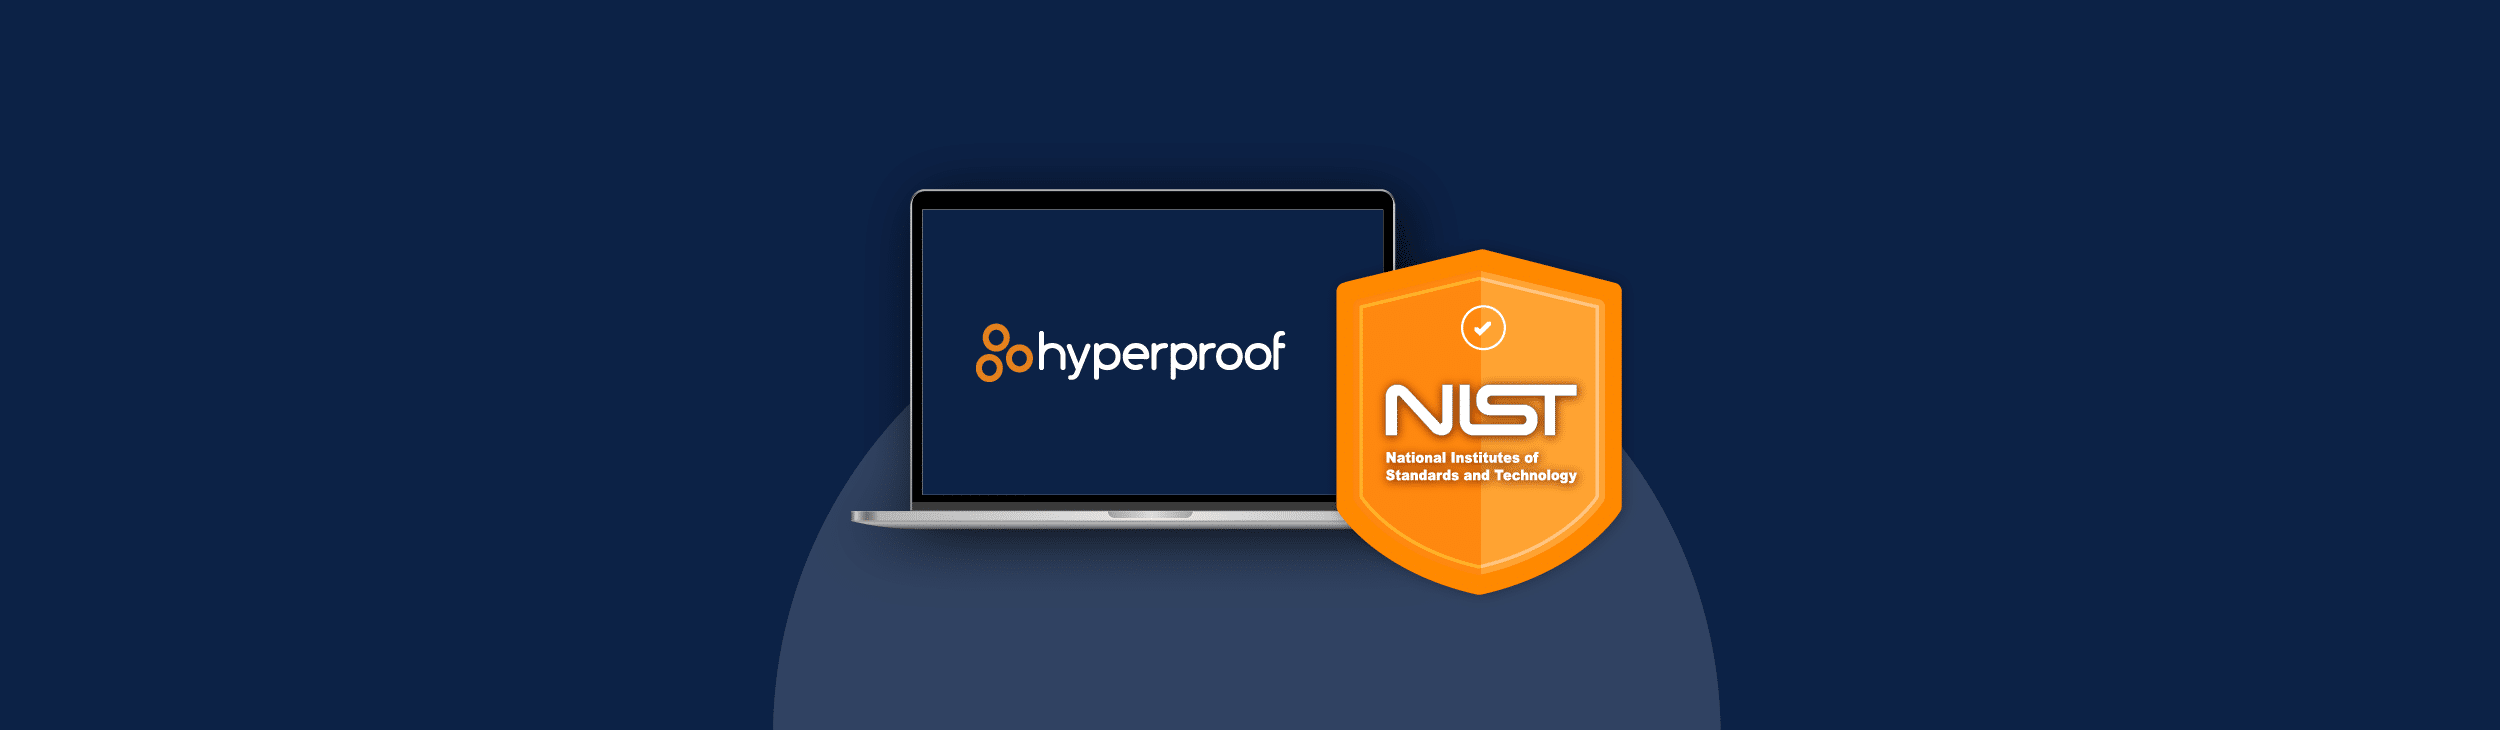 Hyperproof and NIST Security Framework